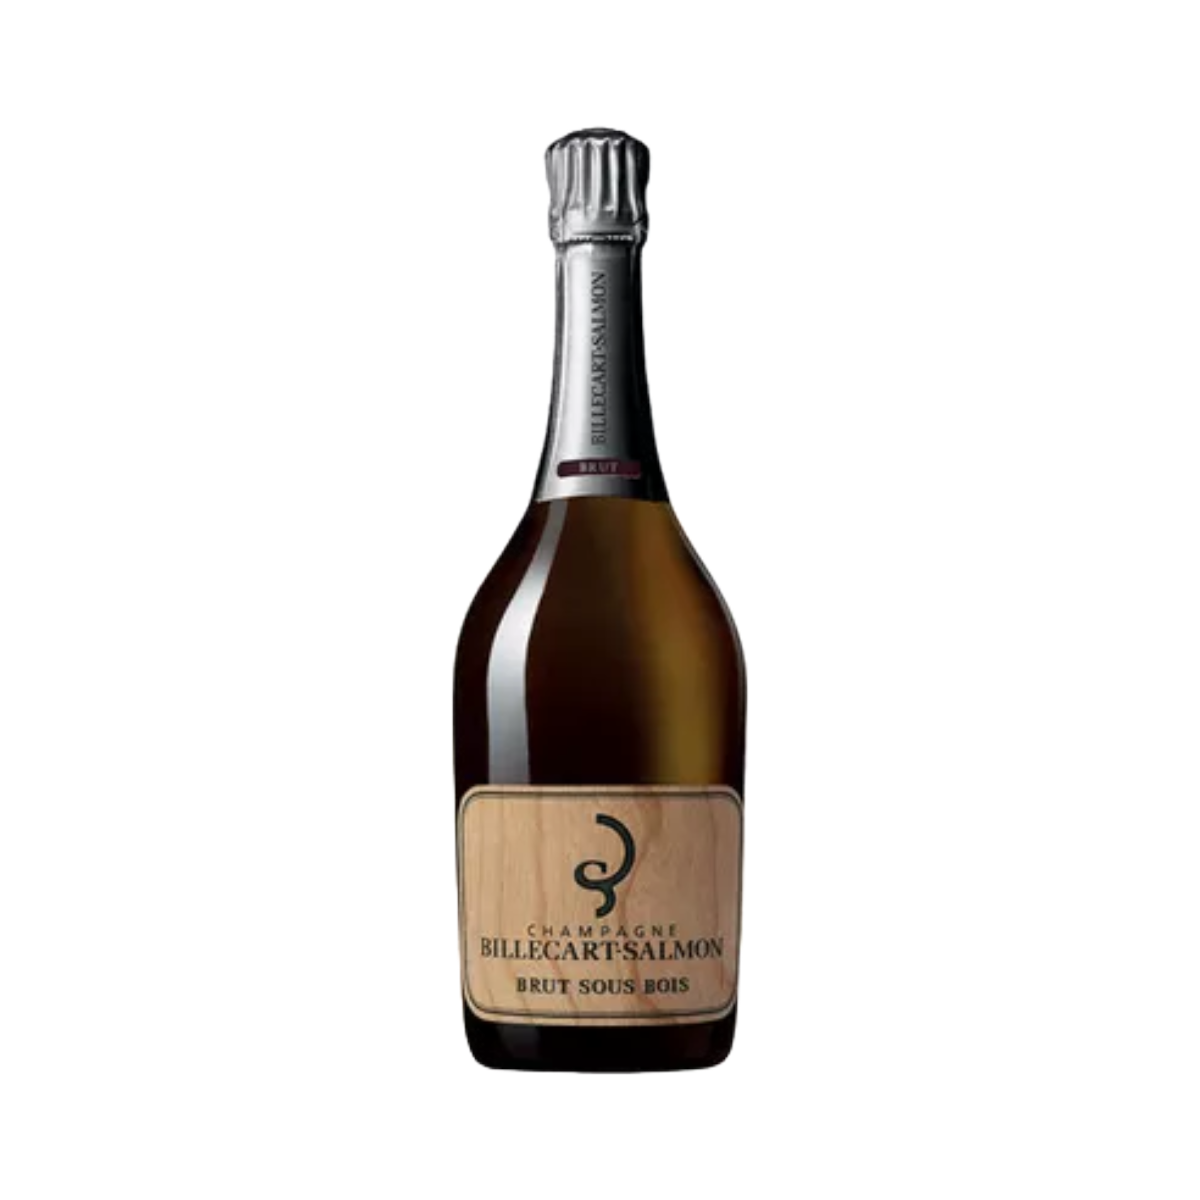 Champagne Billecart-Salmon 'Sous Bois' NV